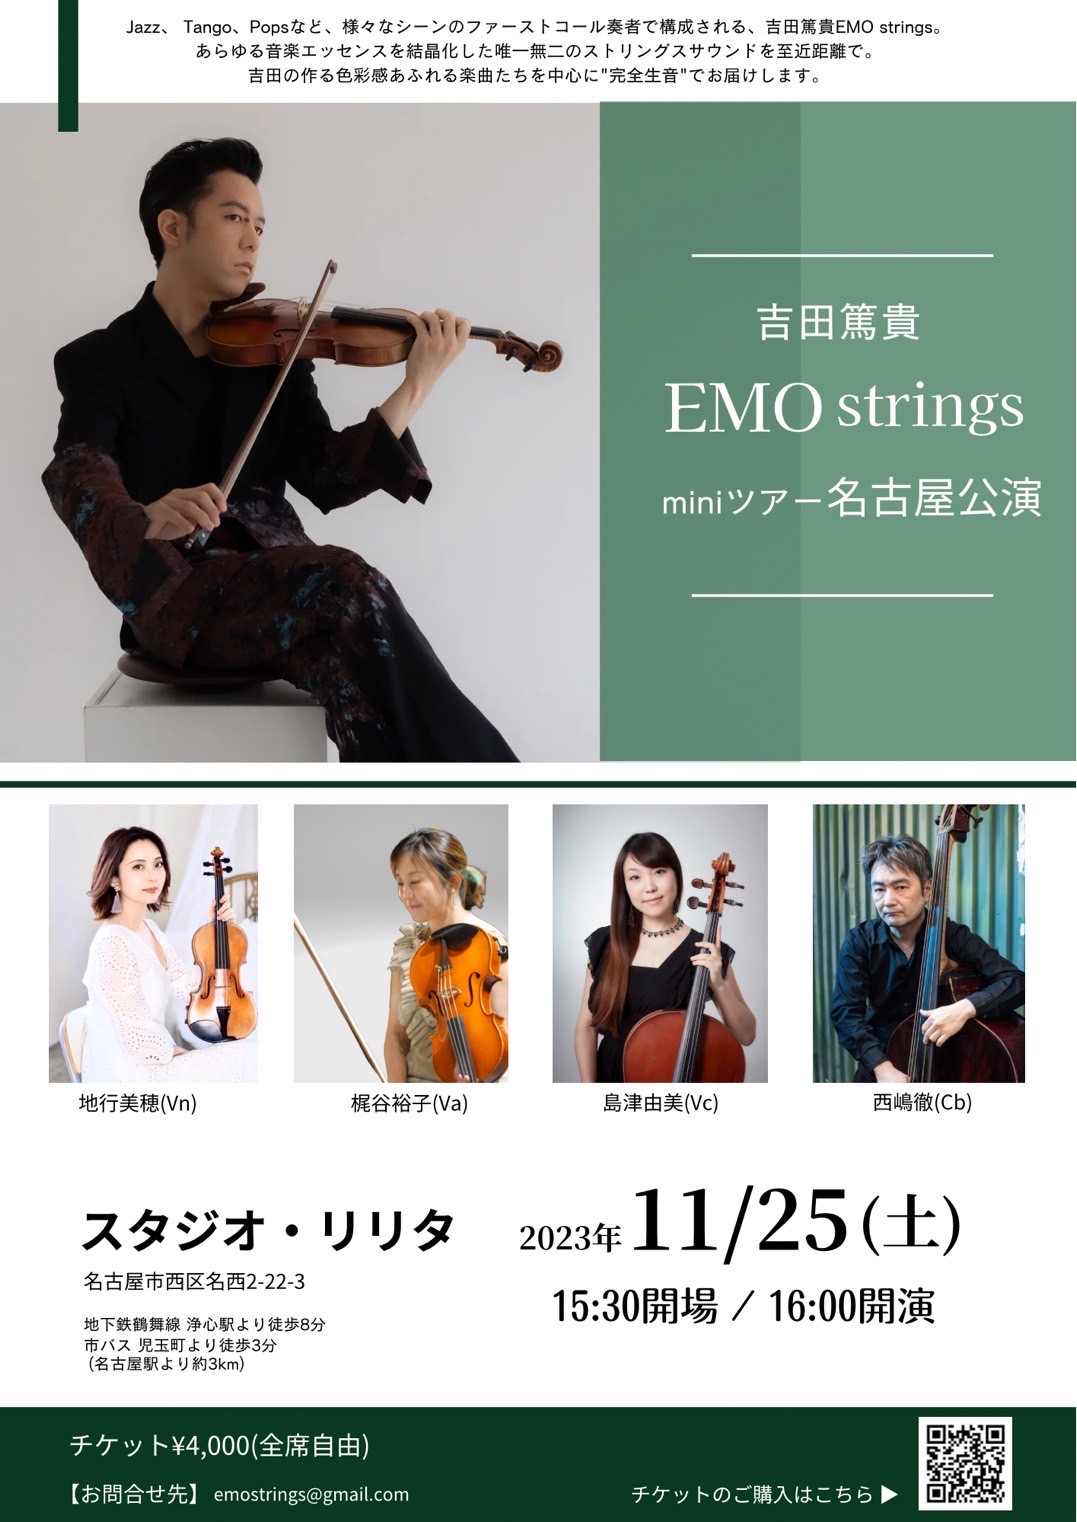 【名古屋公演】吉田篤貴EMO strings miniツアー2023